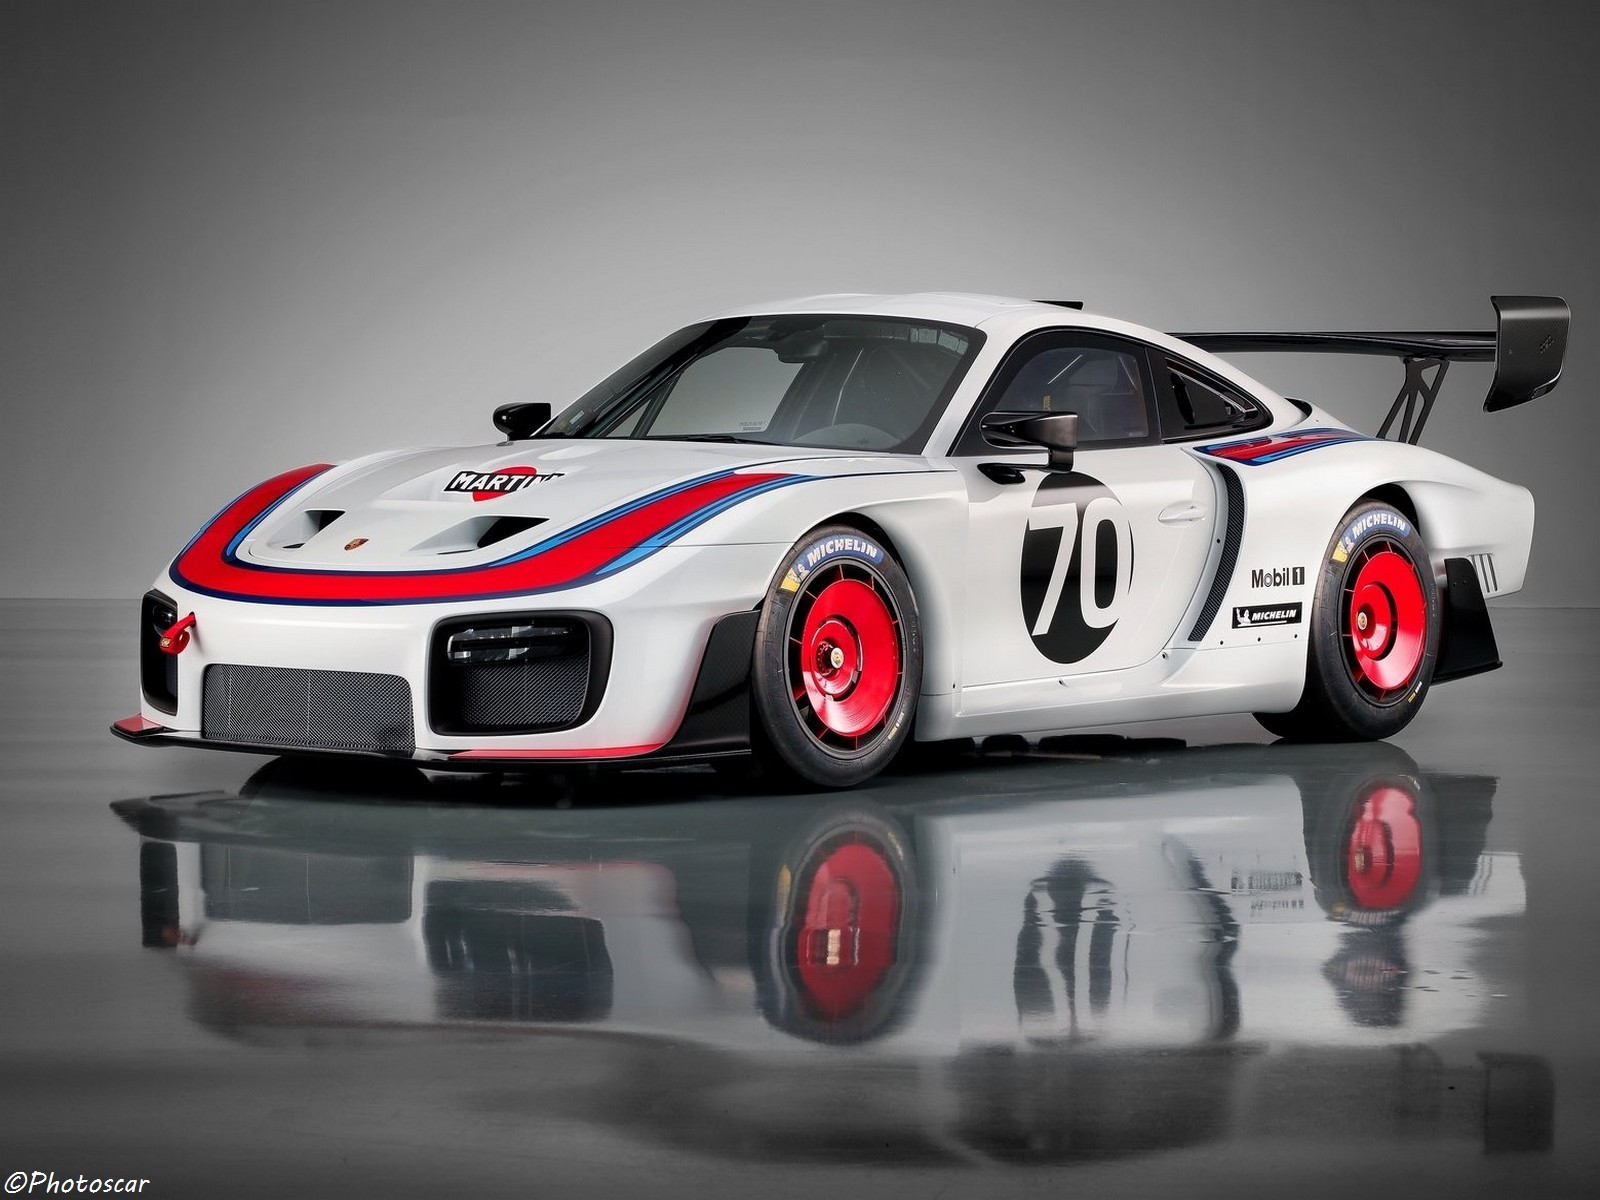 La Porsche 935 2019, inspiré de la voiture de course Le Mans d'antan